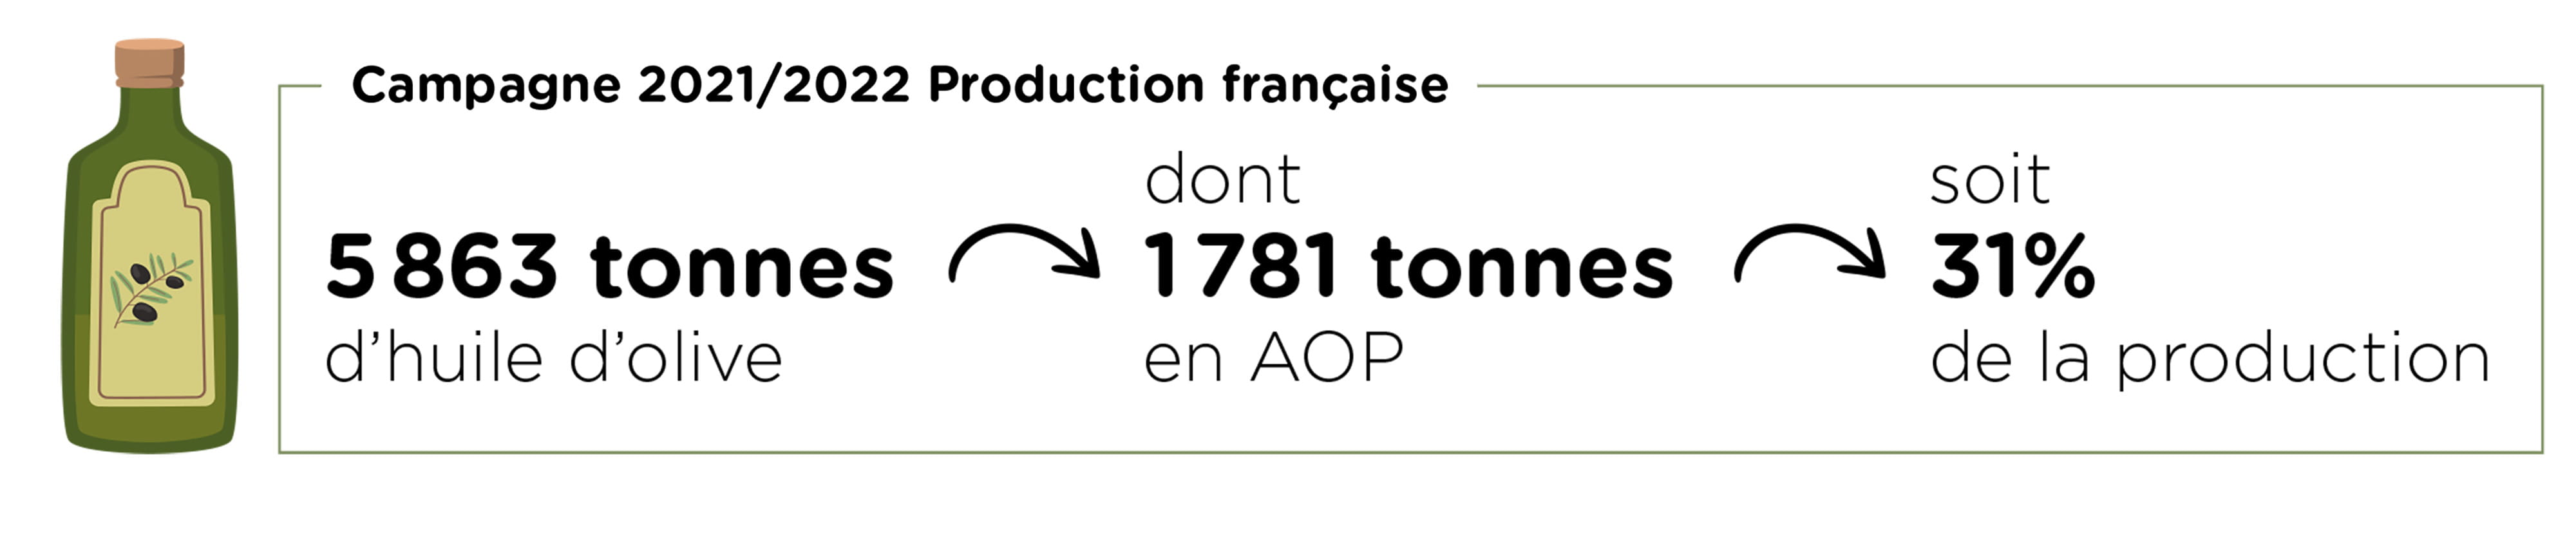 Infographie sur la campagne 2021/2022 de production française d'huile d'olive